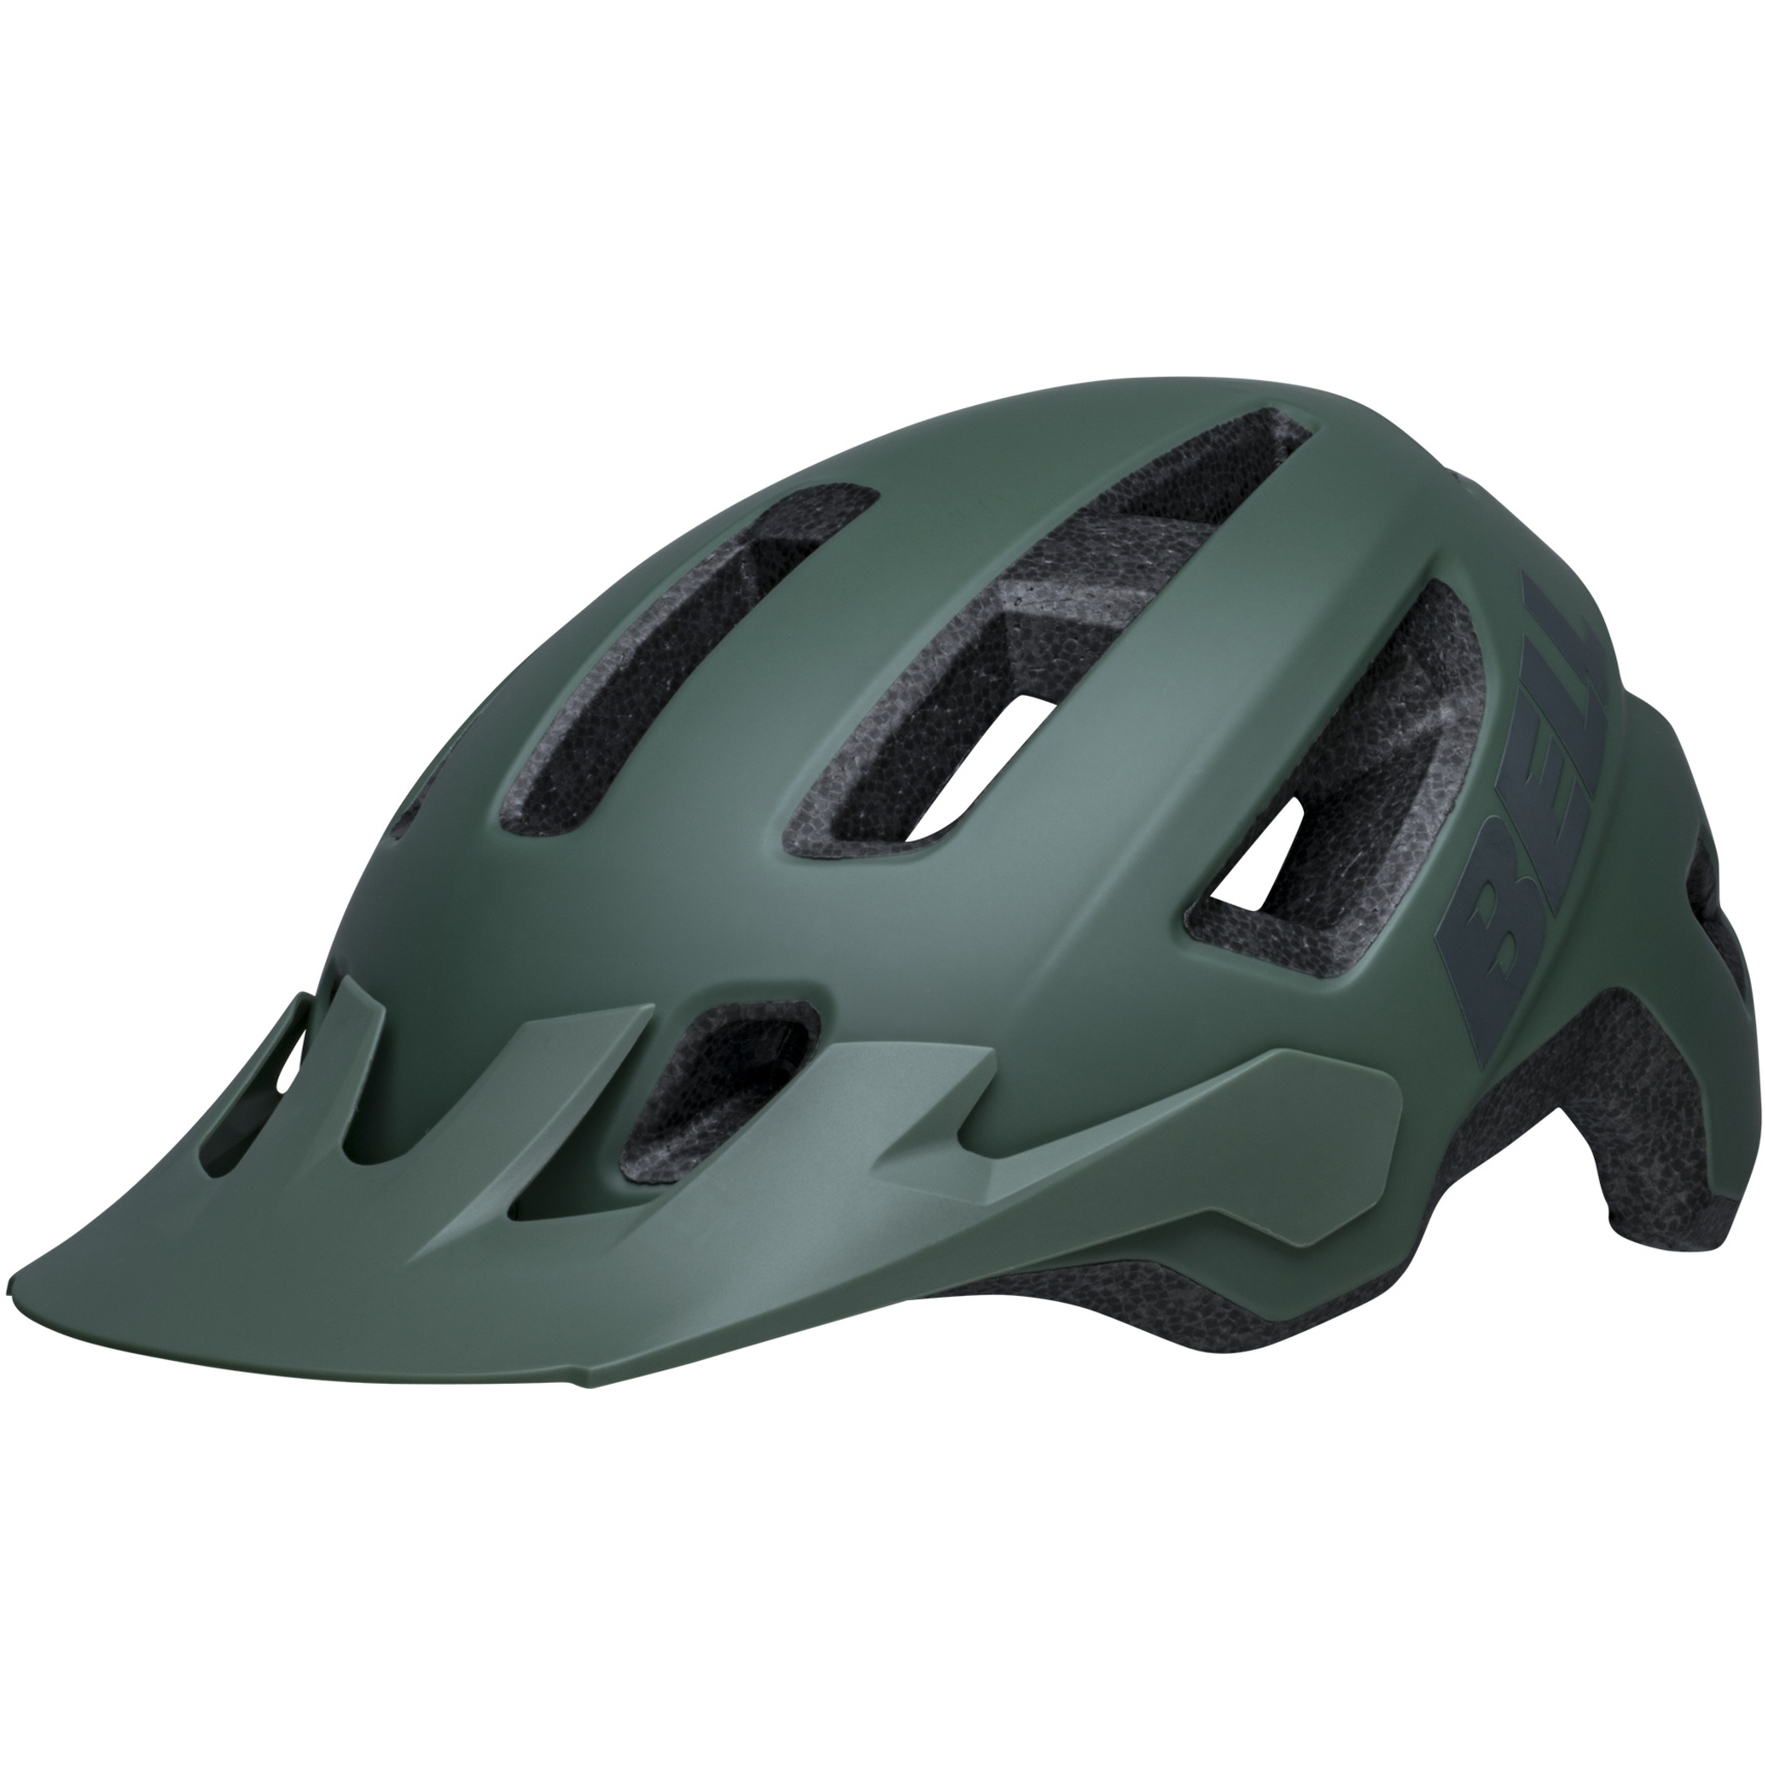 Produktbild von Bell Nomad 2 Helm - matte green